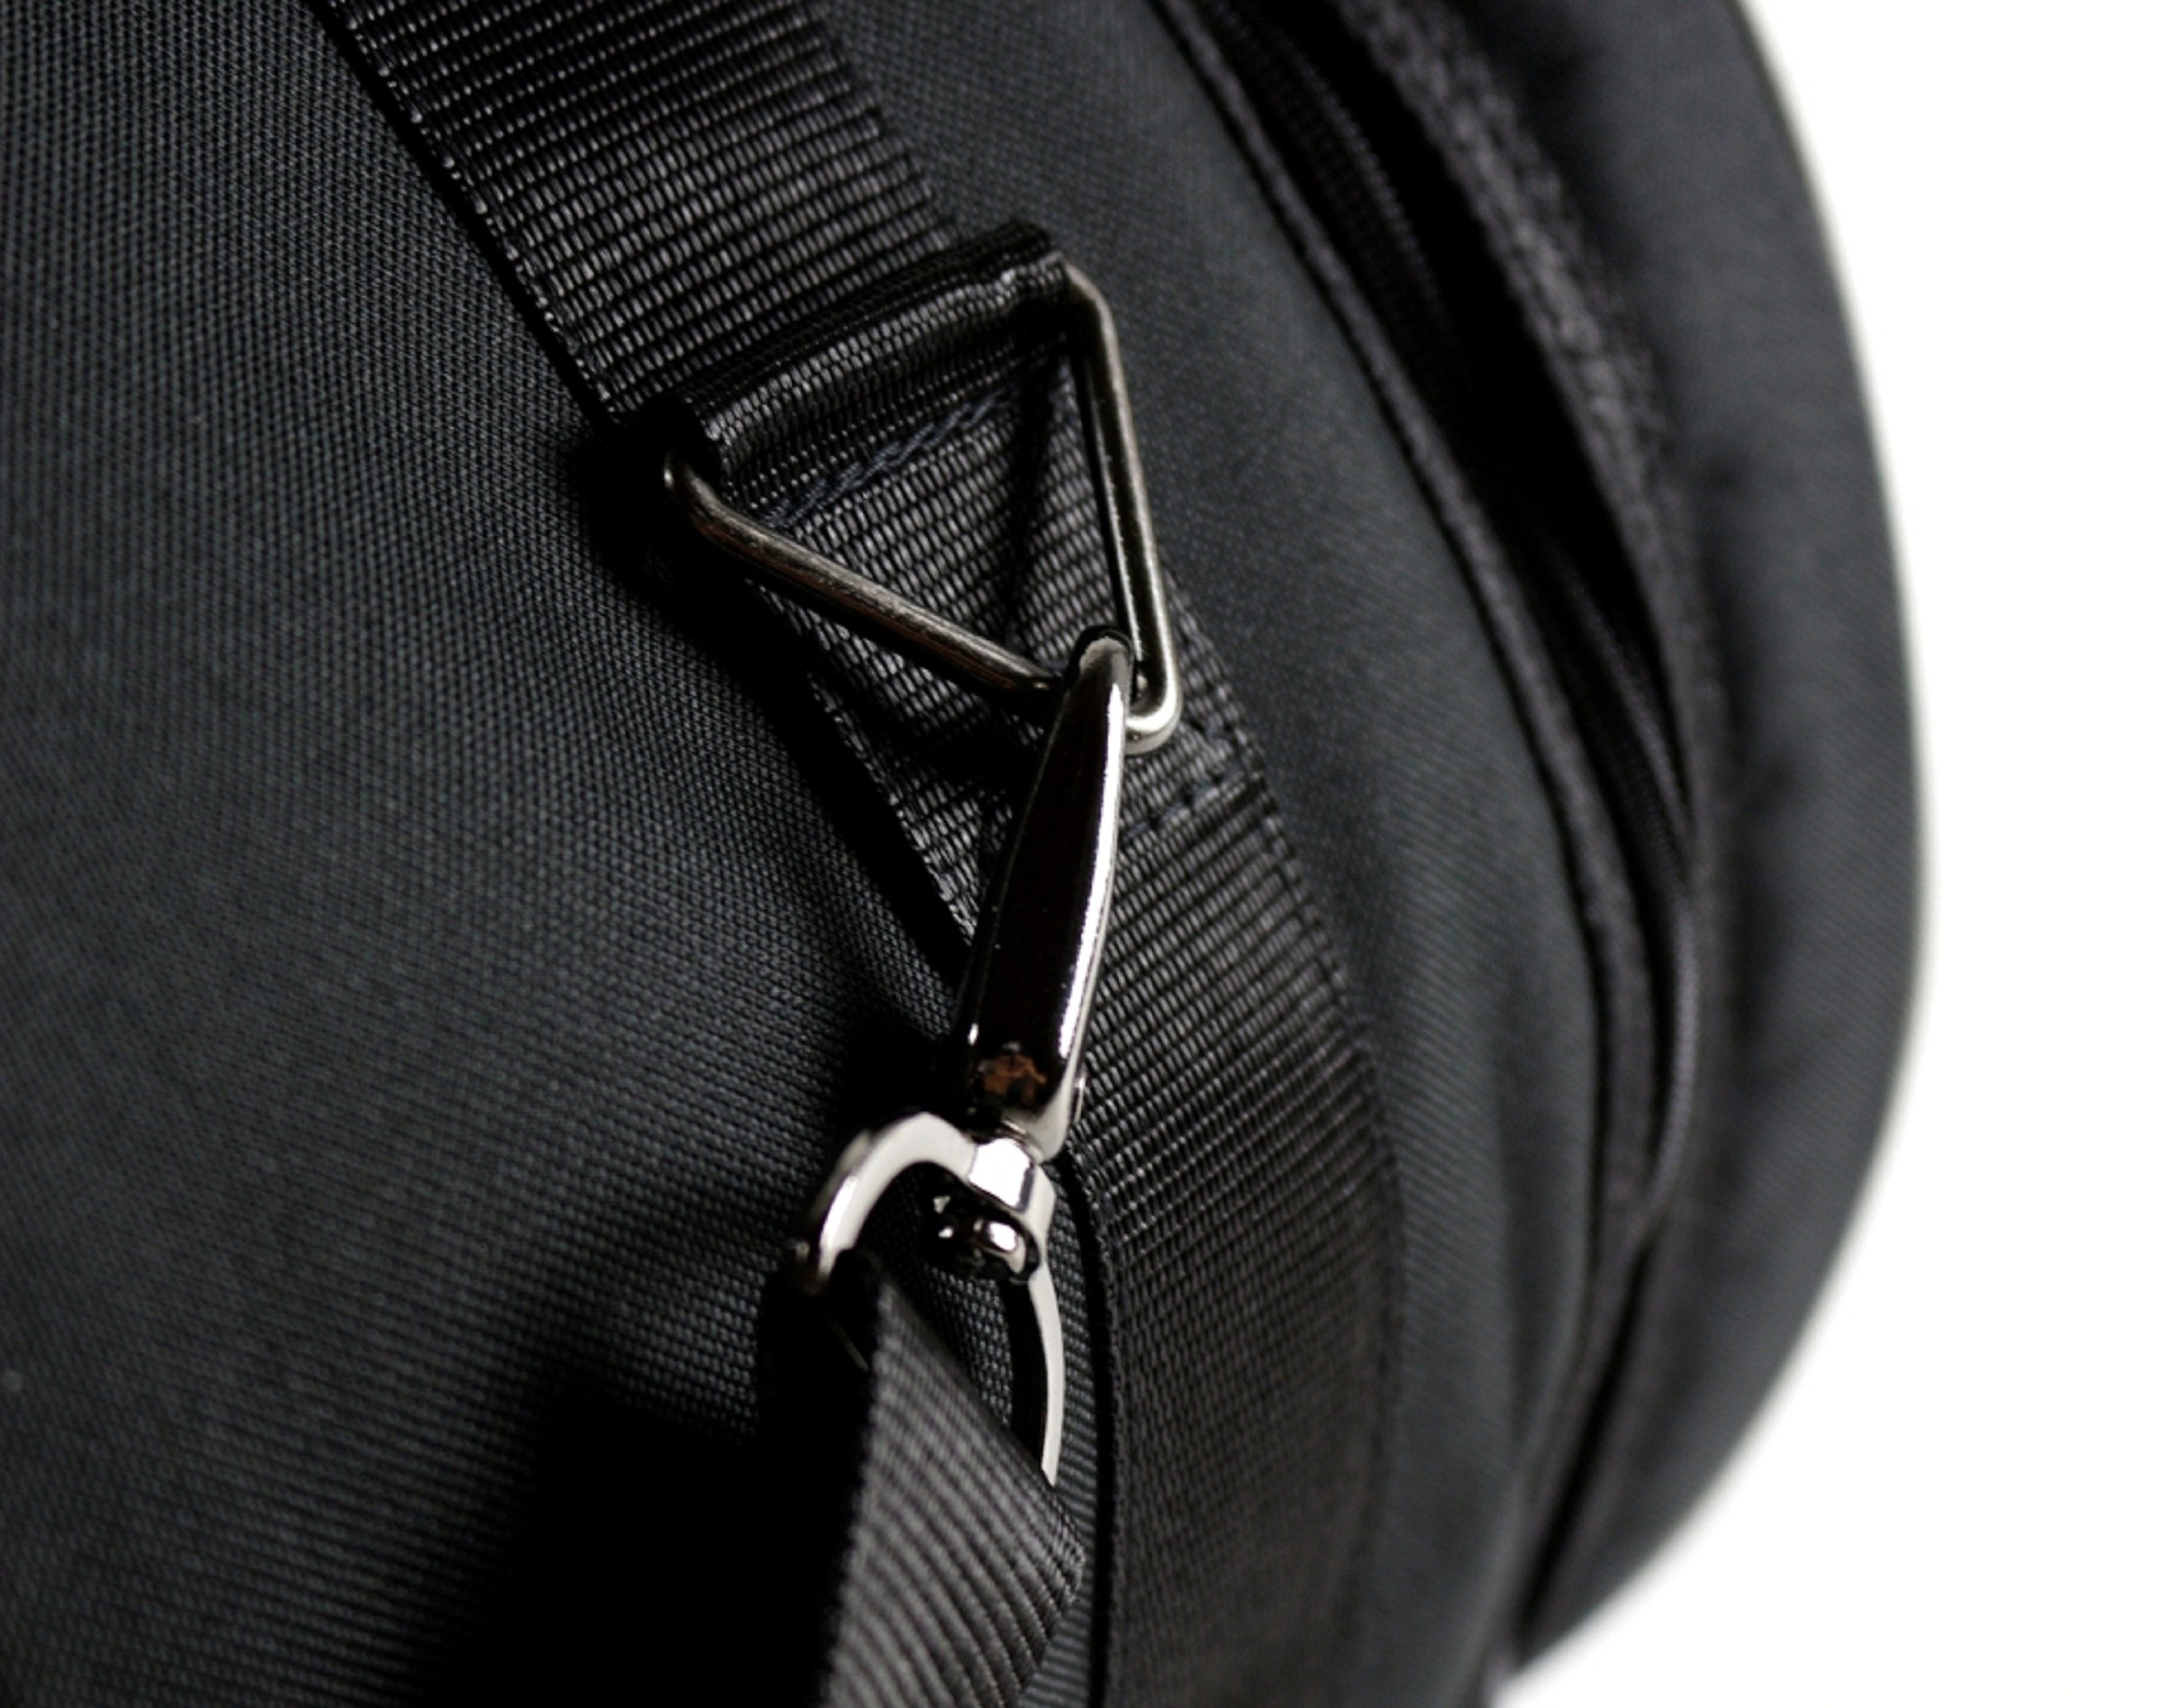 M-Bag Snaretasche 14"x6,5" Premium